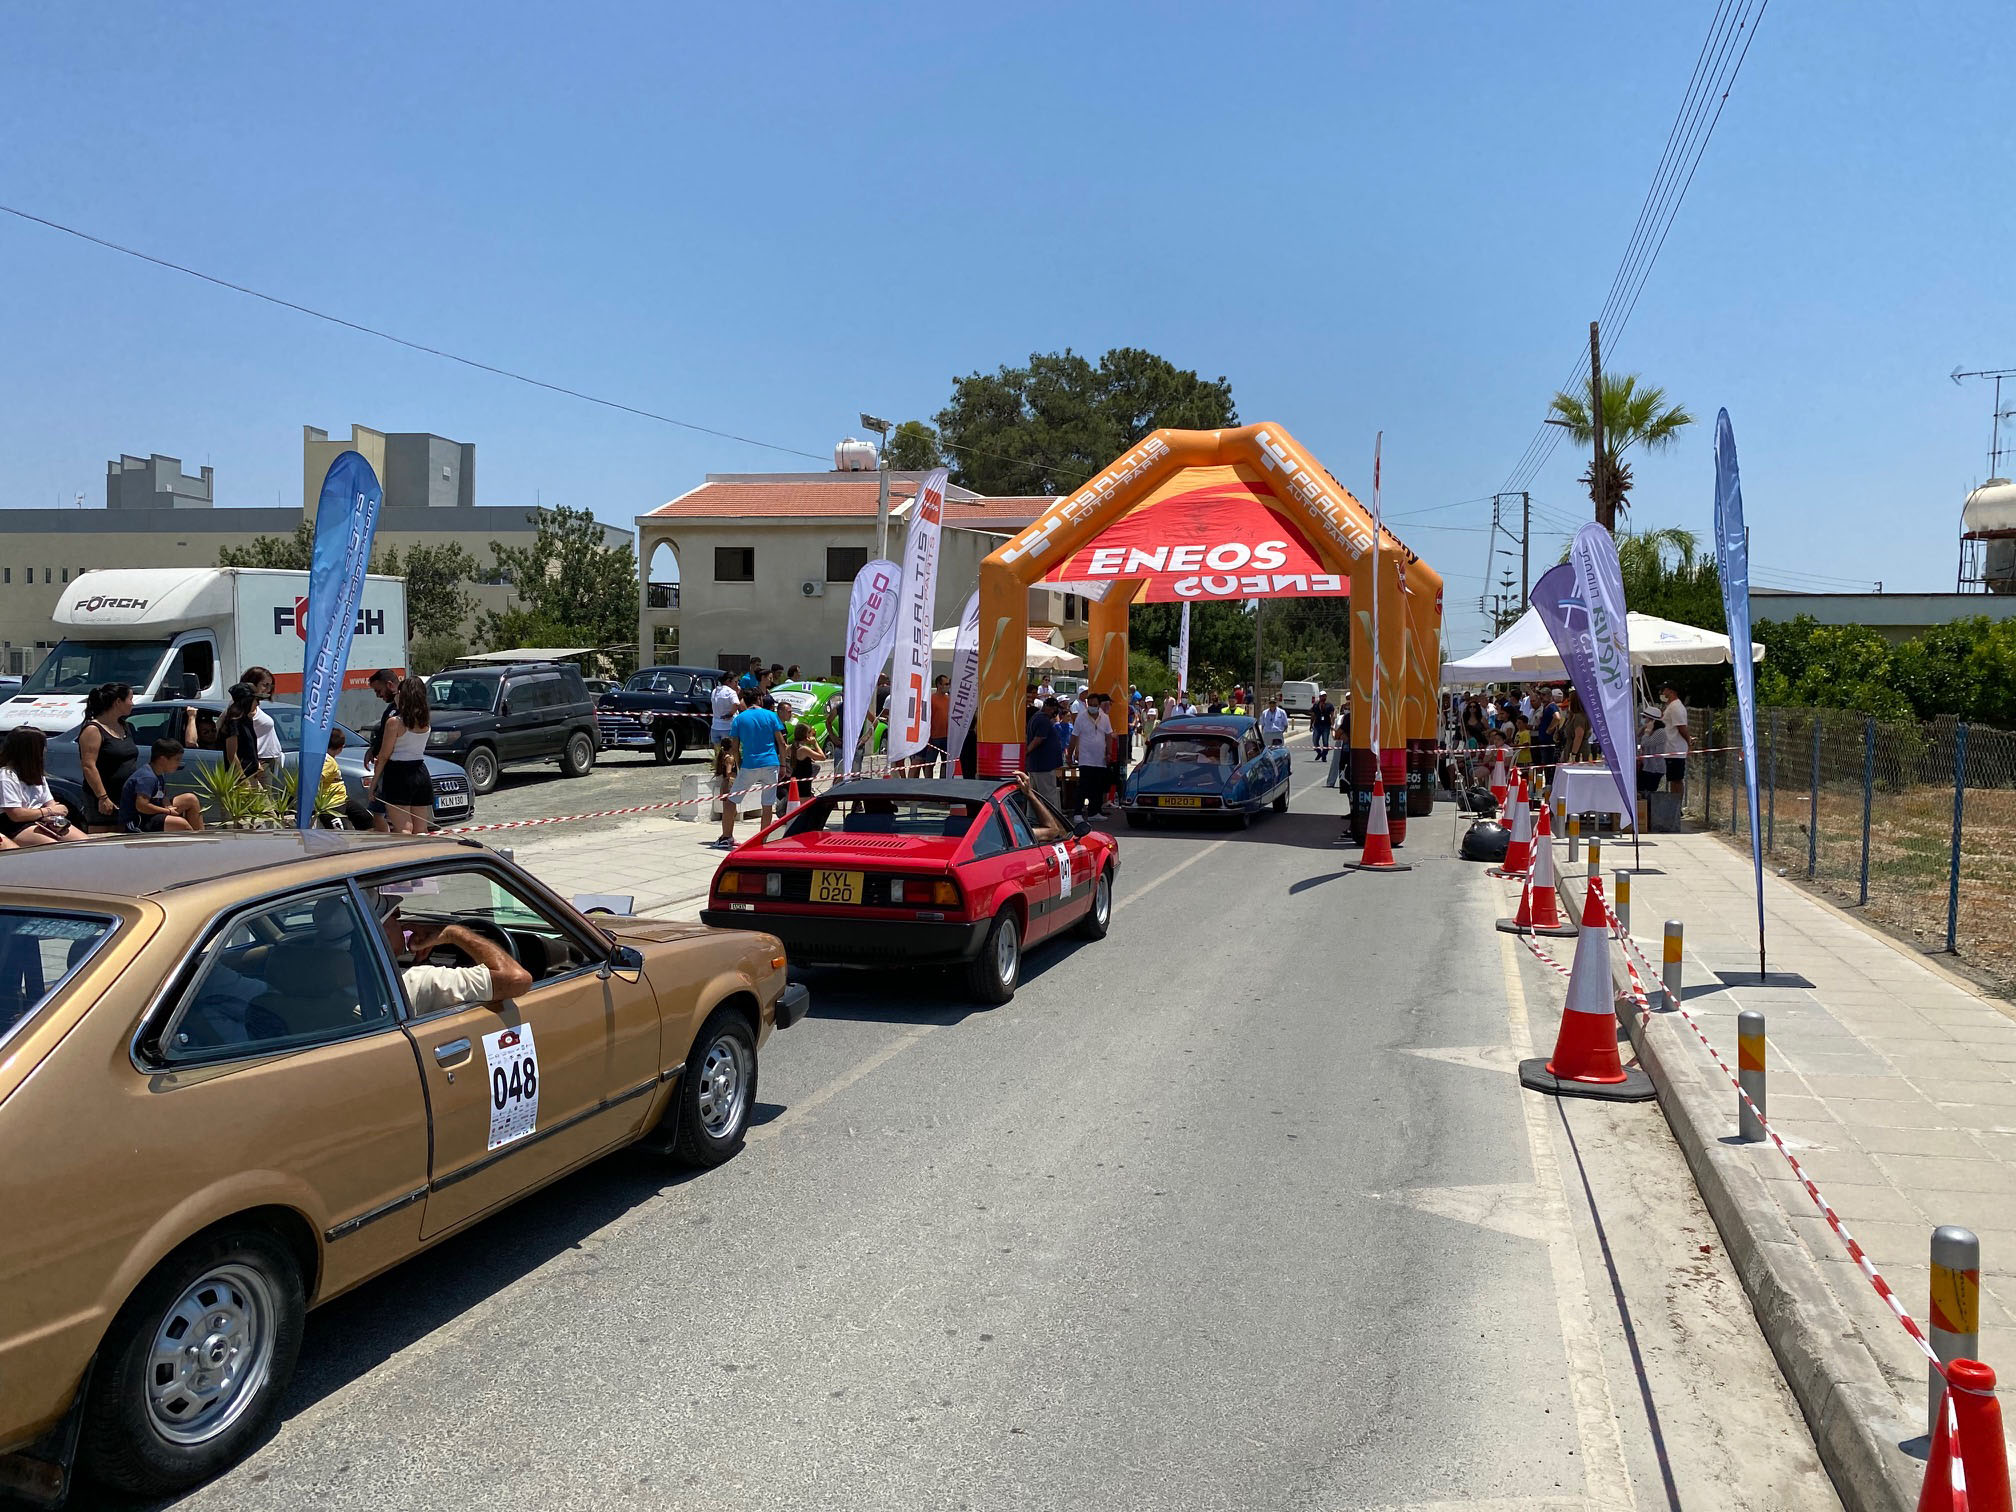 5η Φιλανθρωπική Εκδήλωση του Δήμου Αθηένου για το Ράλι Αγώνα Ακριβείας Κλασσικών Αυτοκινήτων